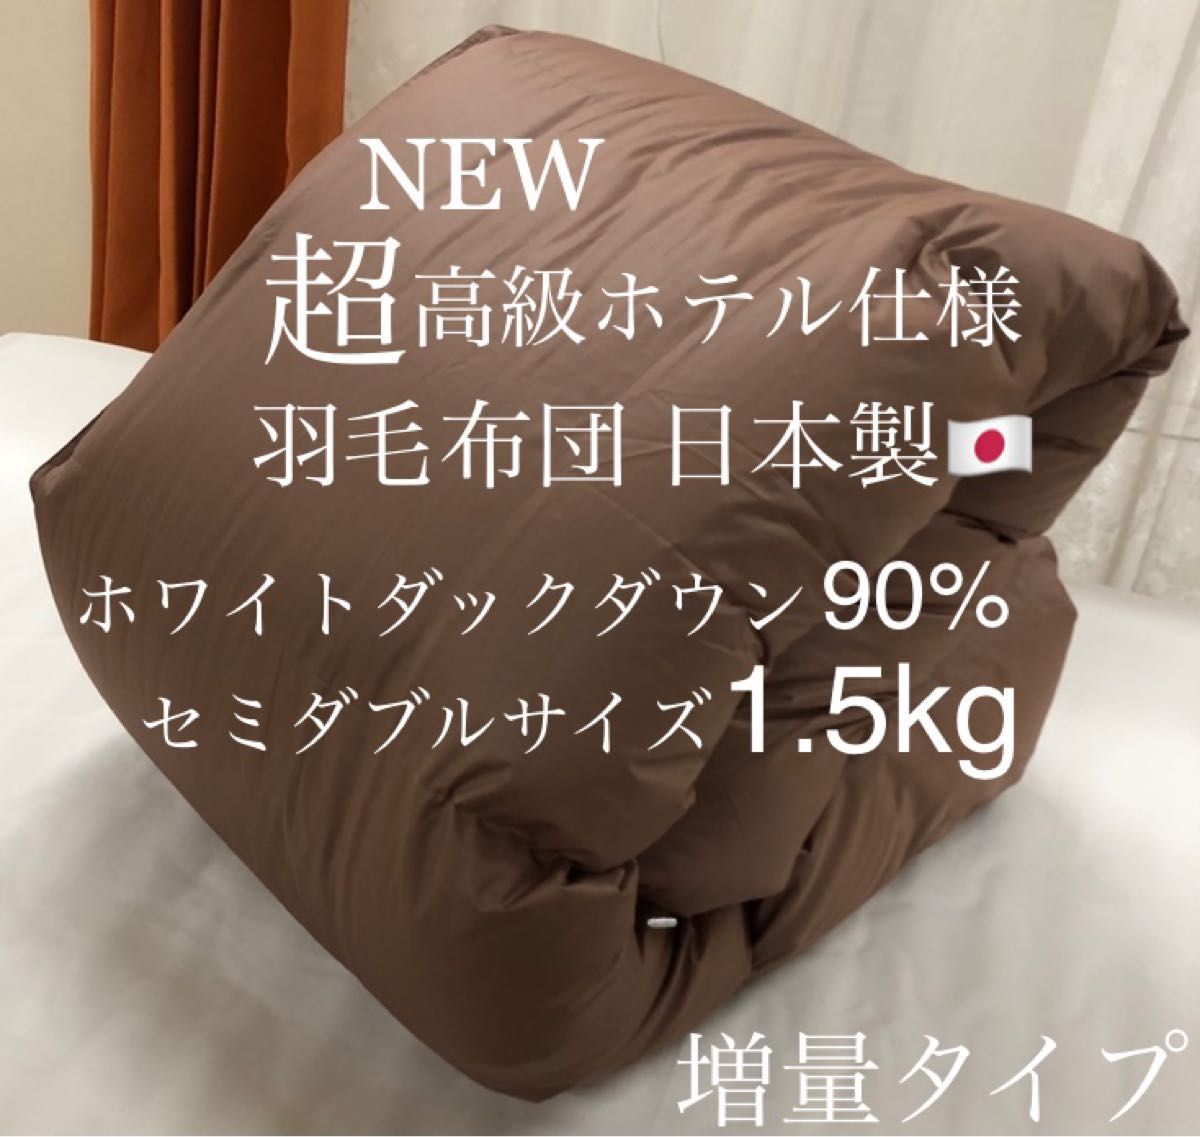 ☆特別価格 超高級ホテル仕様羽毛布団 日本製 ホワイトダックダウン90